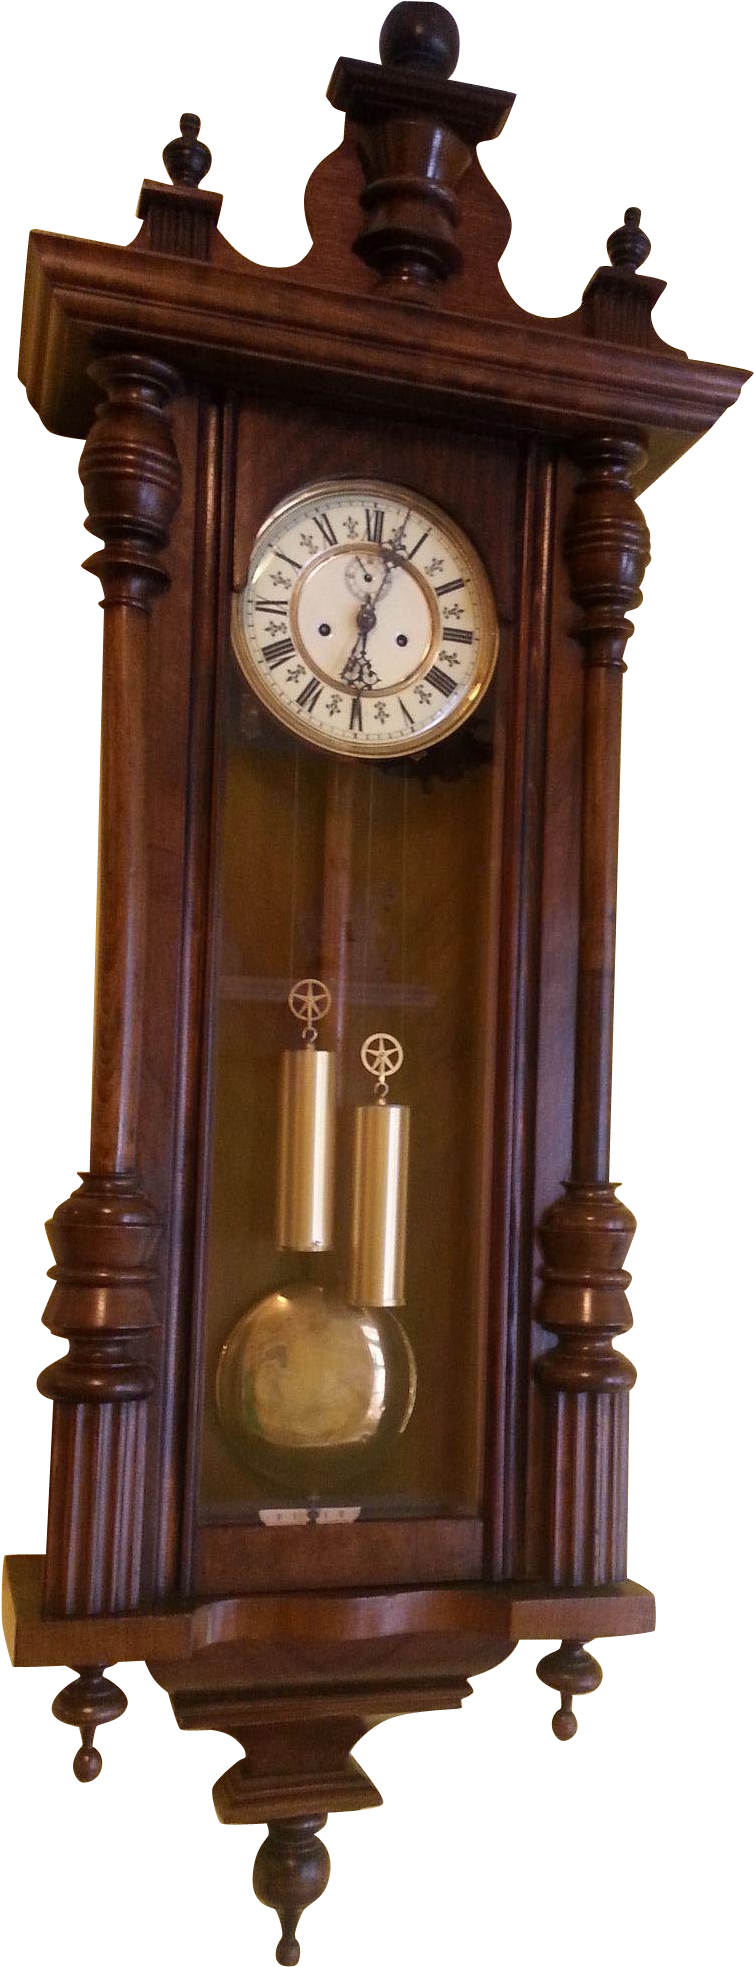 17th Century Pendulum Clock Invention Regulator - 17th Century Pendulum Clock Invention Regulator (1966x1966)